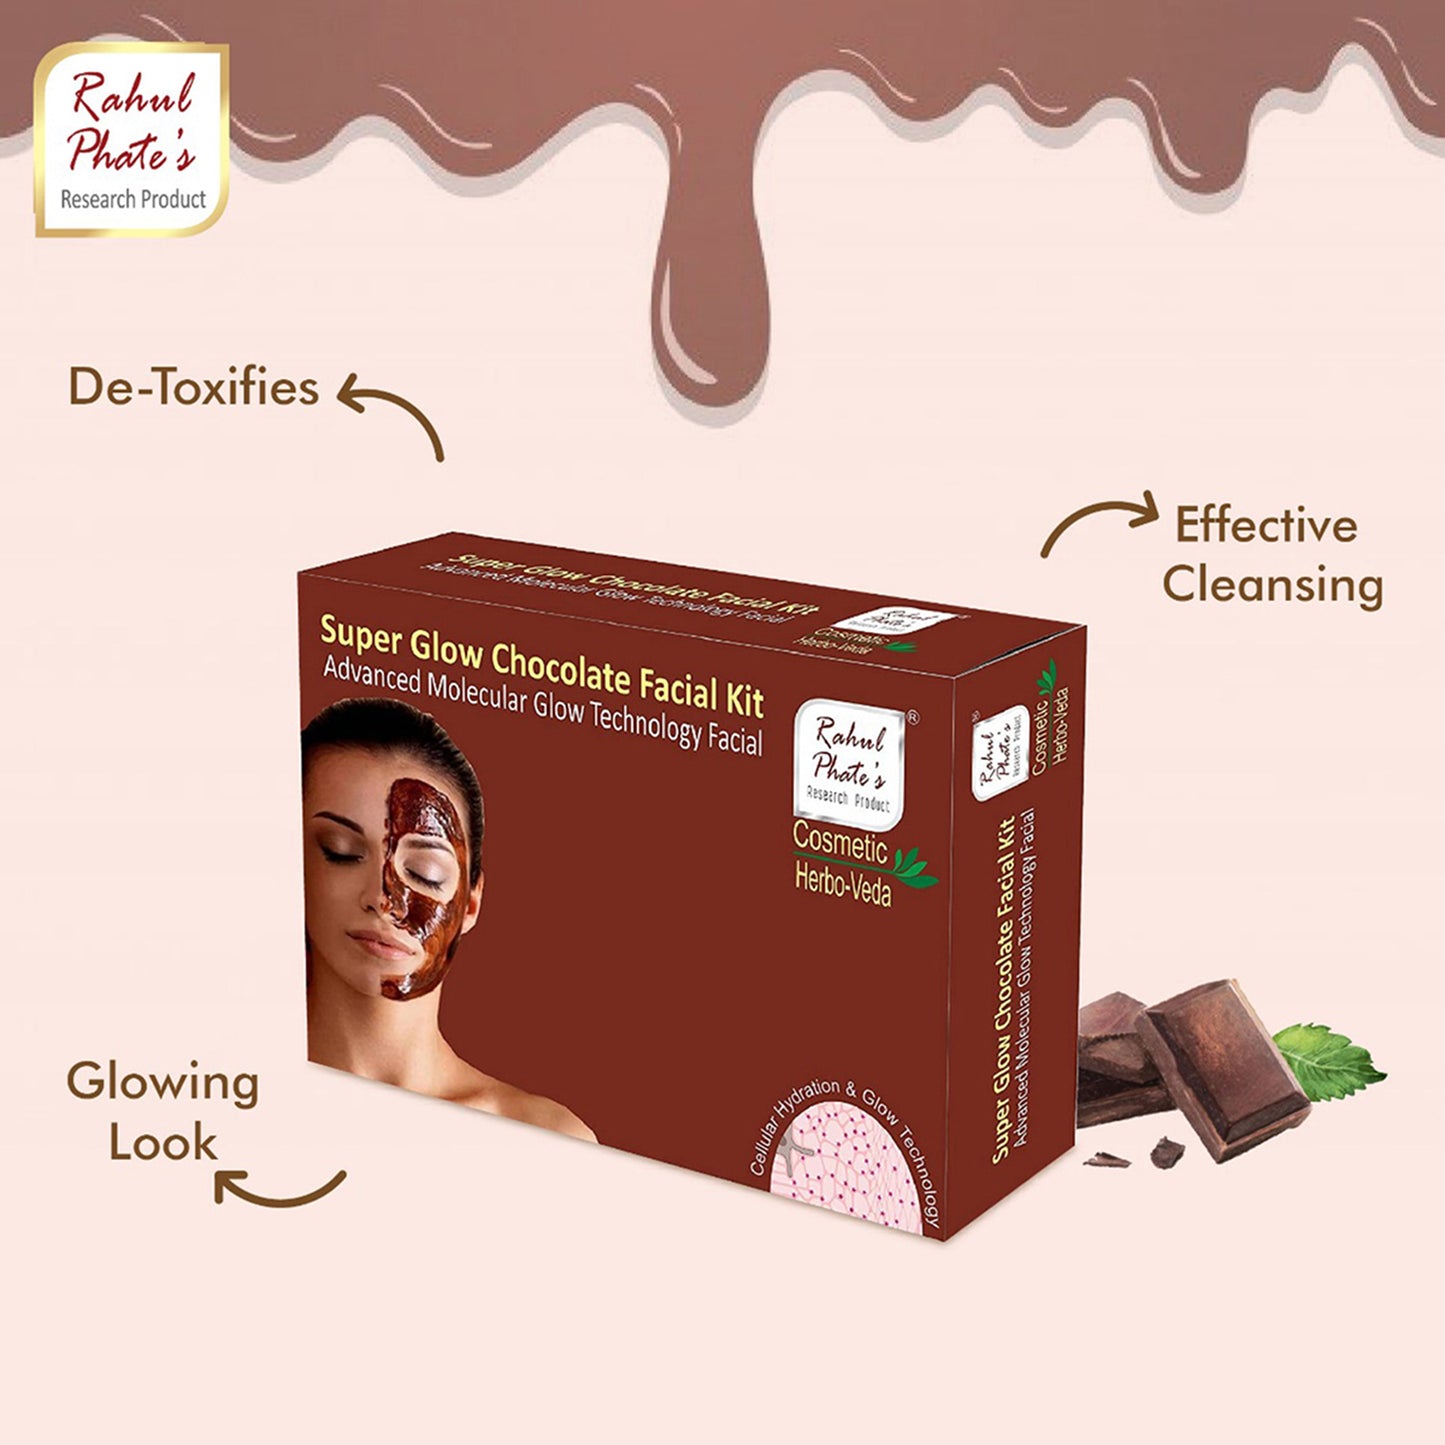 Super Glow Chocolate Facial Kit